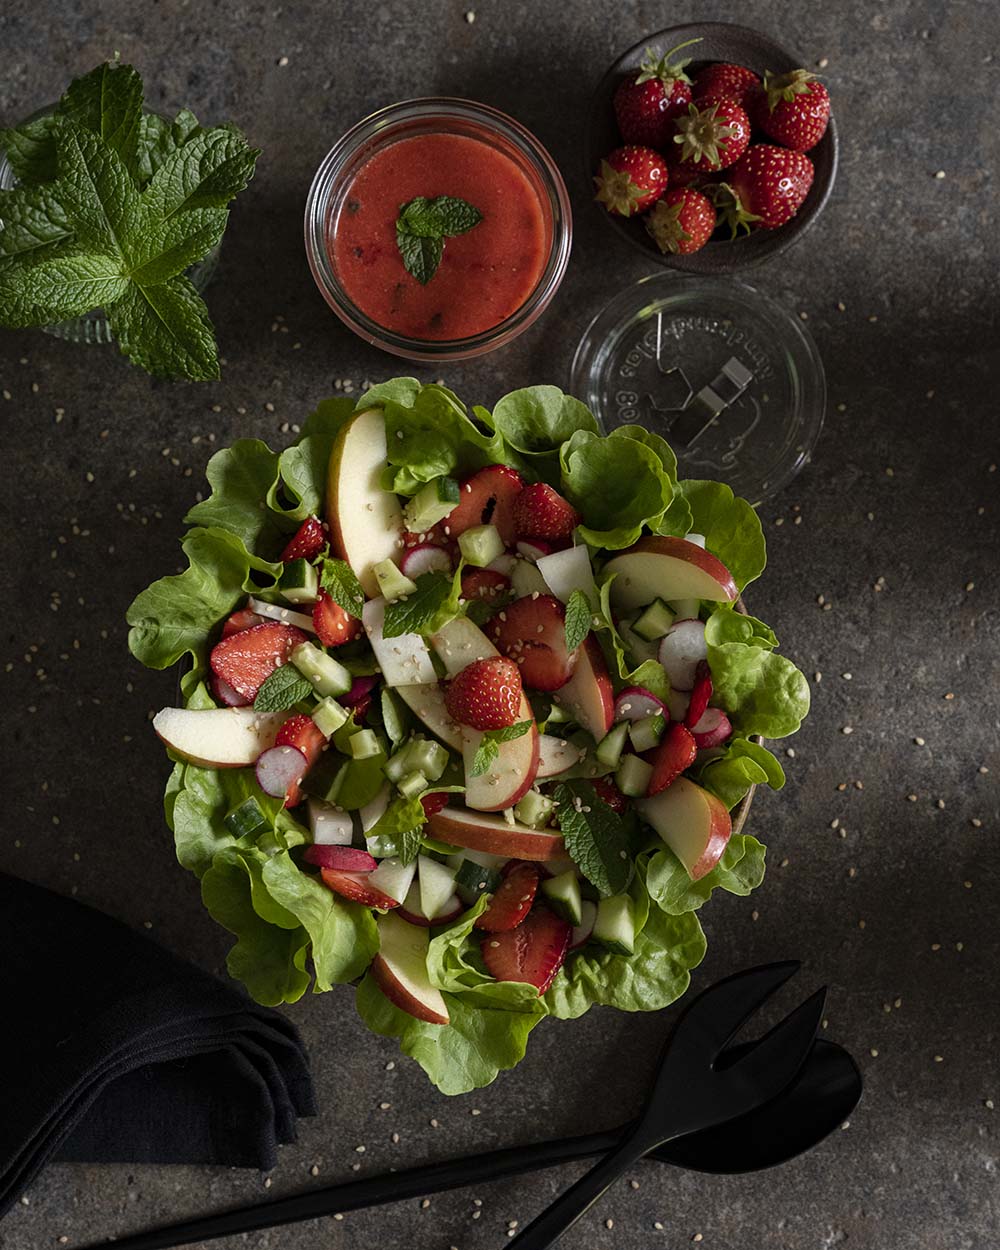 Unser fertig angerichteter Salat steht auf dem Tisch. Wir haben ihn von oben fotografiert und daneben frische Erdbeeren und ein Glas mit unserem selbstgemachten Erdbeerdressing gestellt.